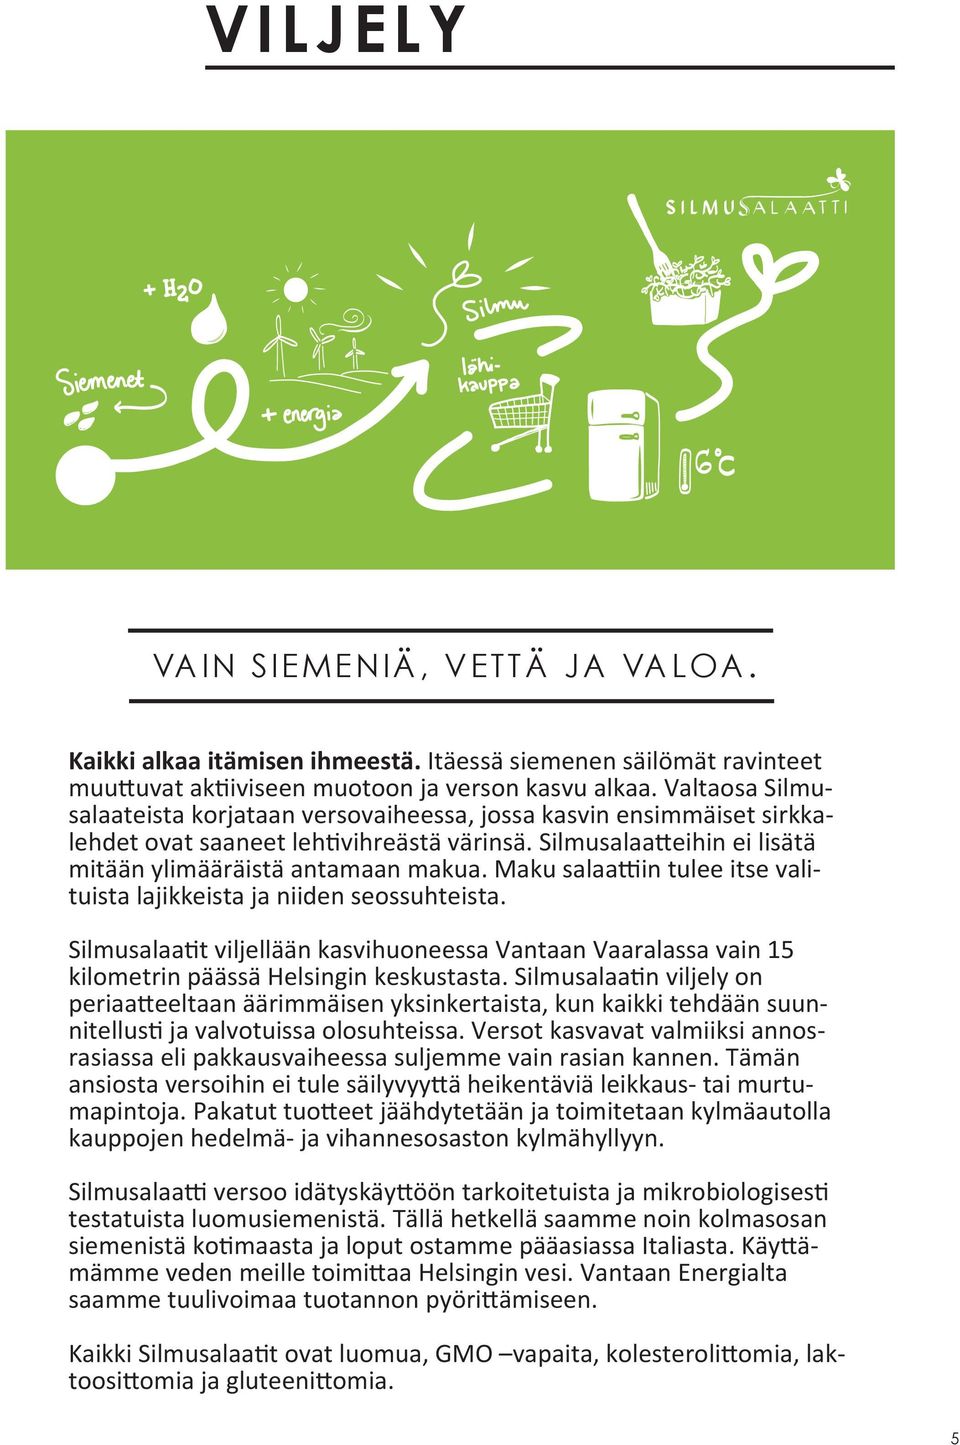 Maku salaattiin tulee itse valituista lajikkeista ja niiden seossuhteista. Silmusalaatit viljellään kasvihuoneessa Vantaan Vaaralassa vain 15 kilometrin päässä Helsingin keskustasta.